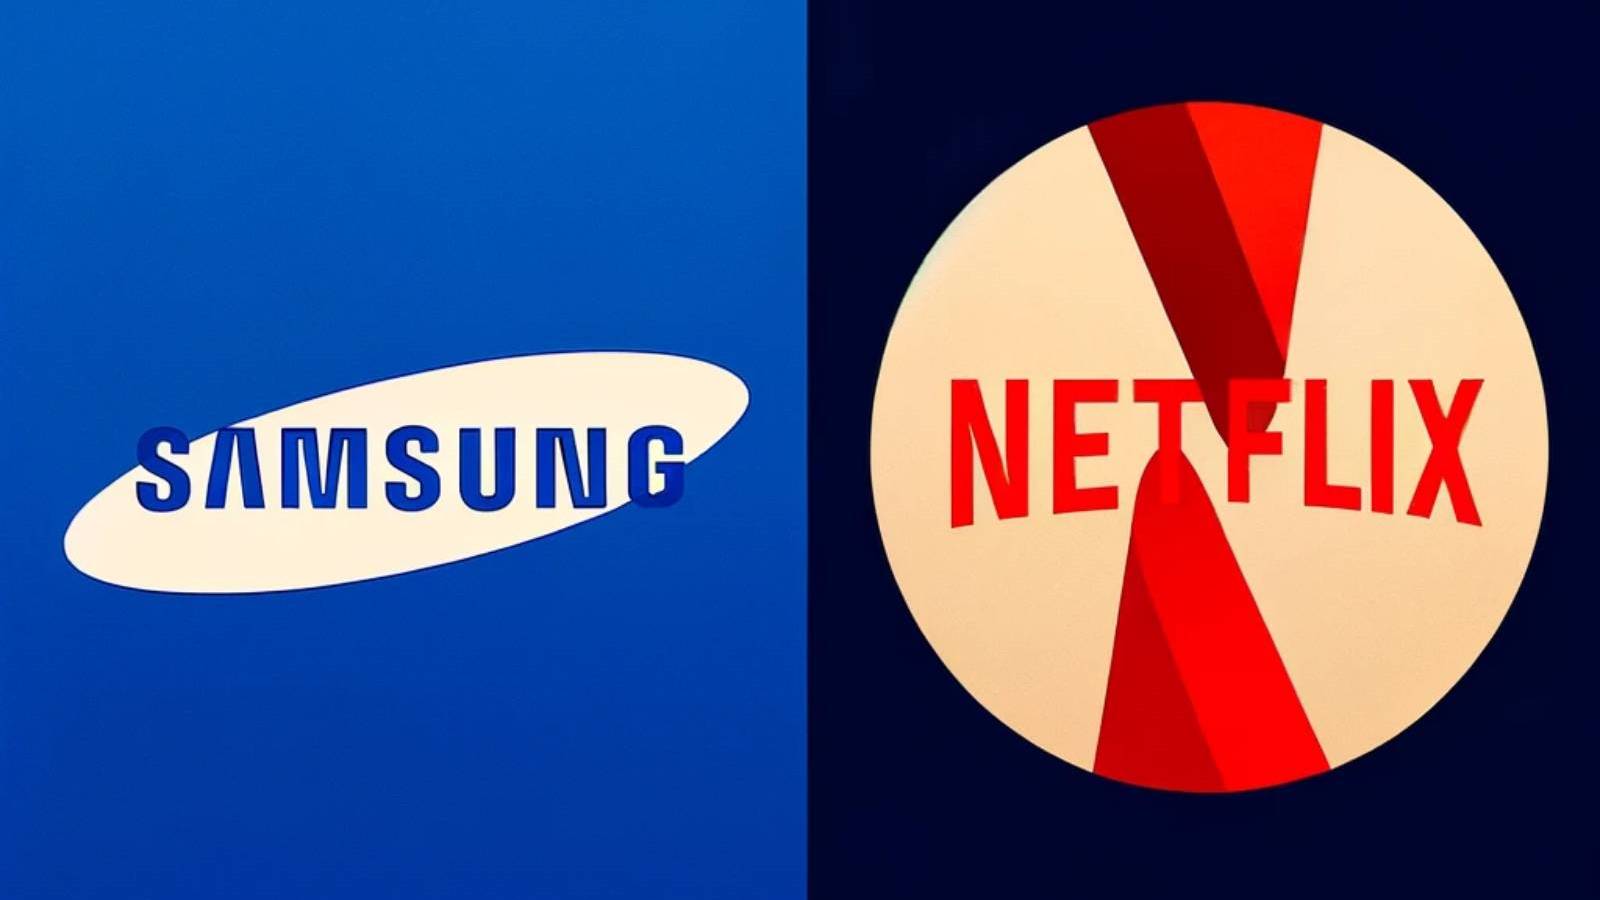 Samsung Anuntul Important cu Netflix, ce Decizie au Luat Companiile